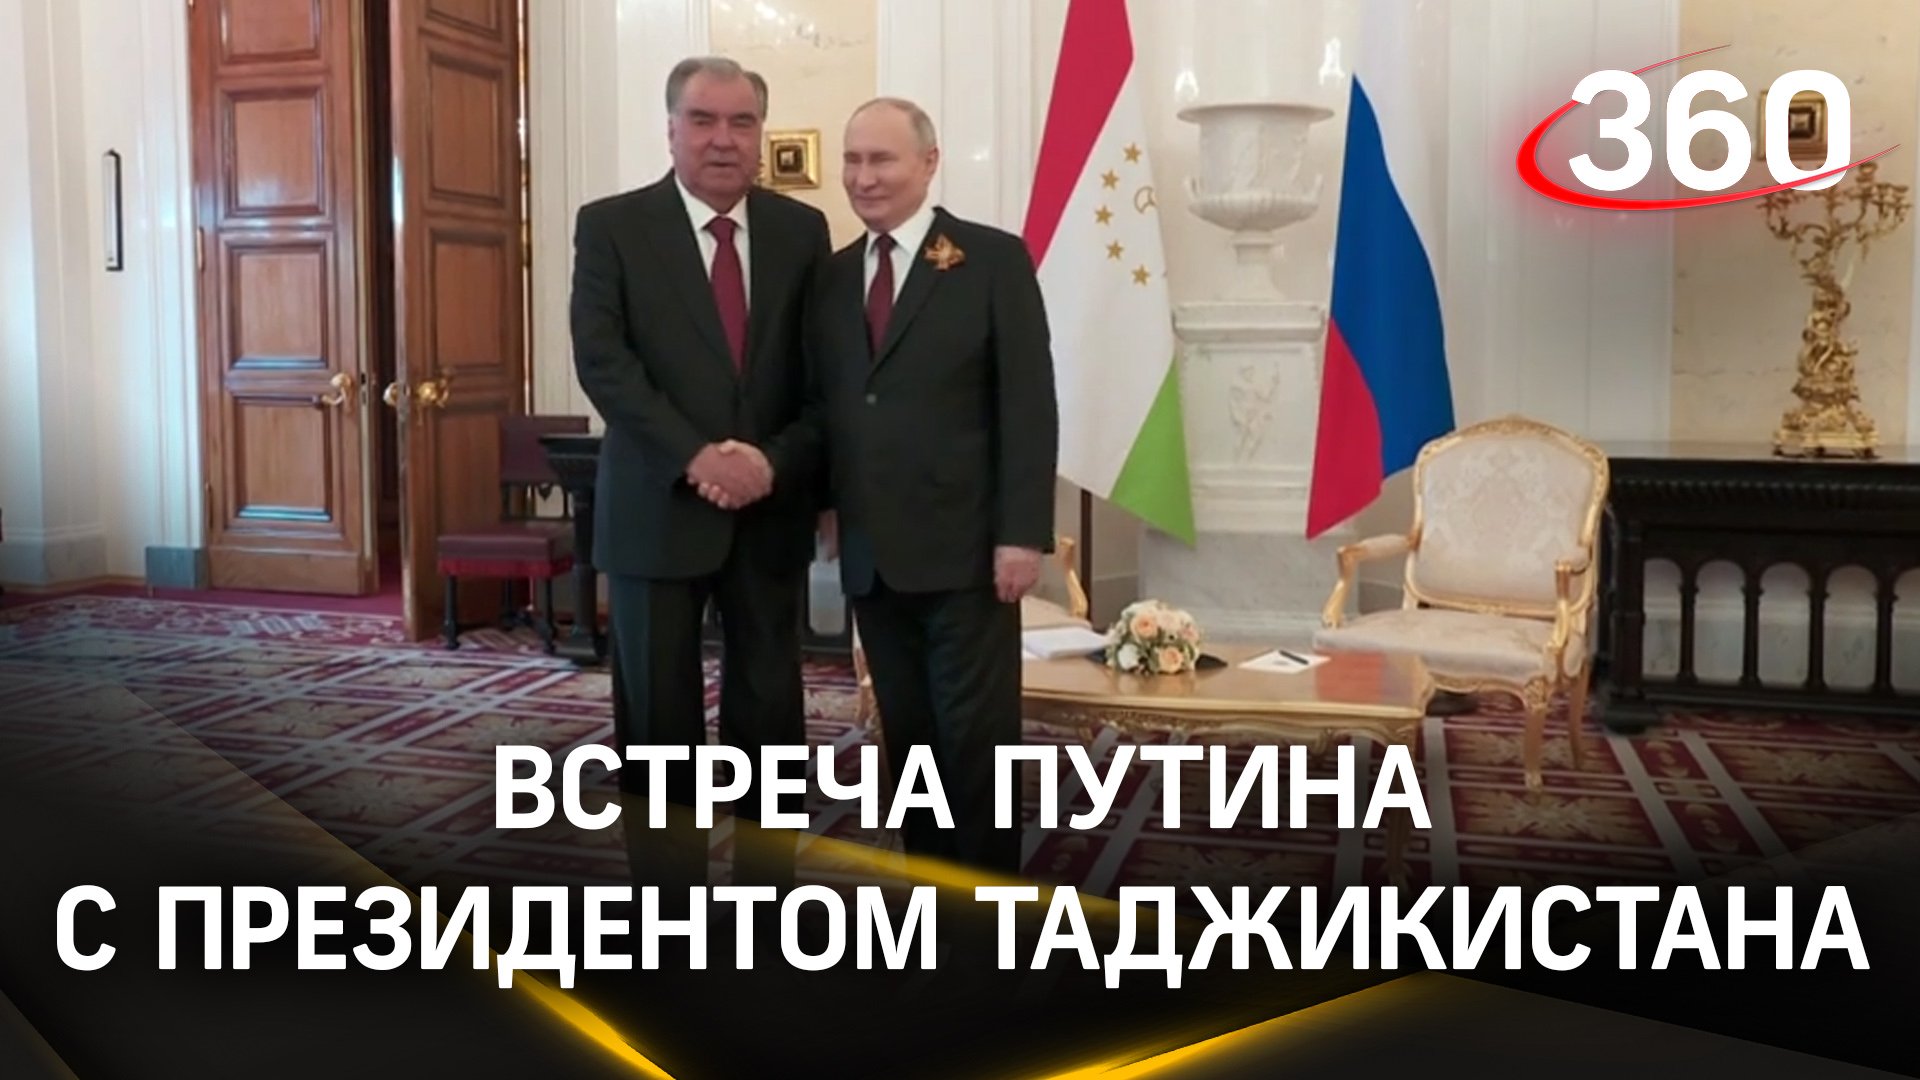 В Кремле состоялись переговоры Владимира Путина с президентом Таджикистана